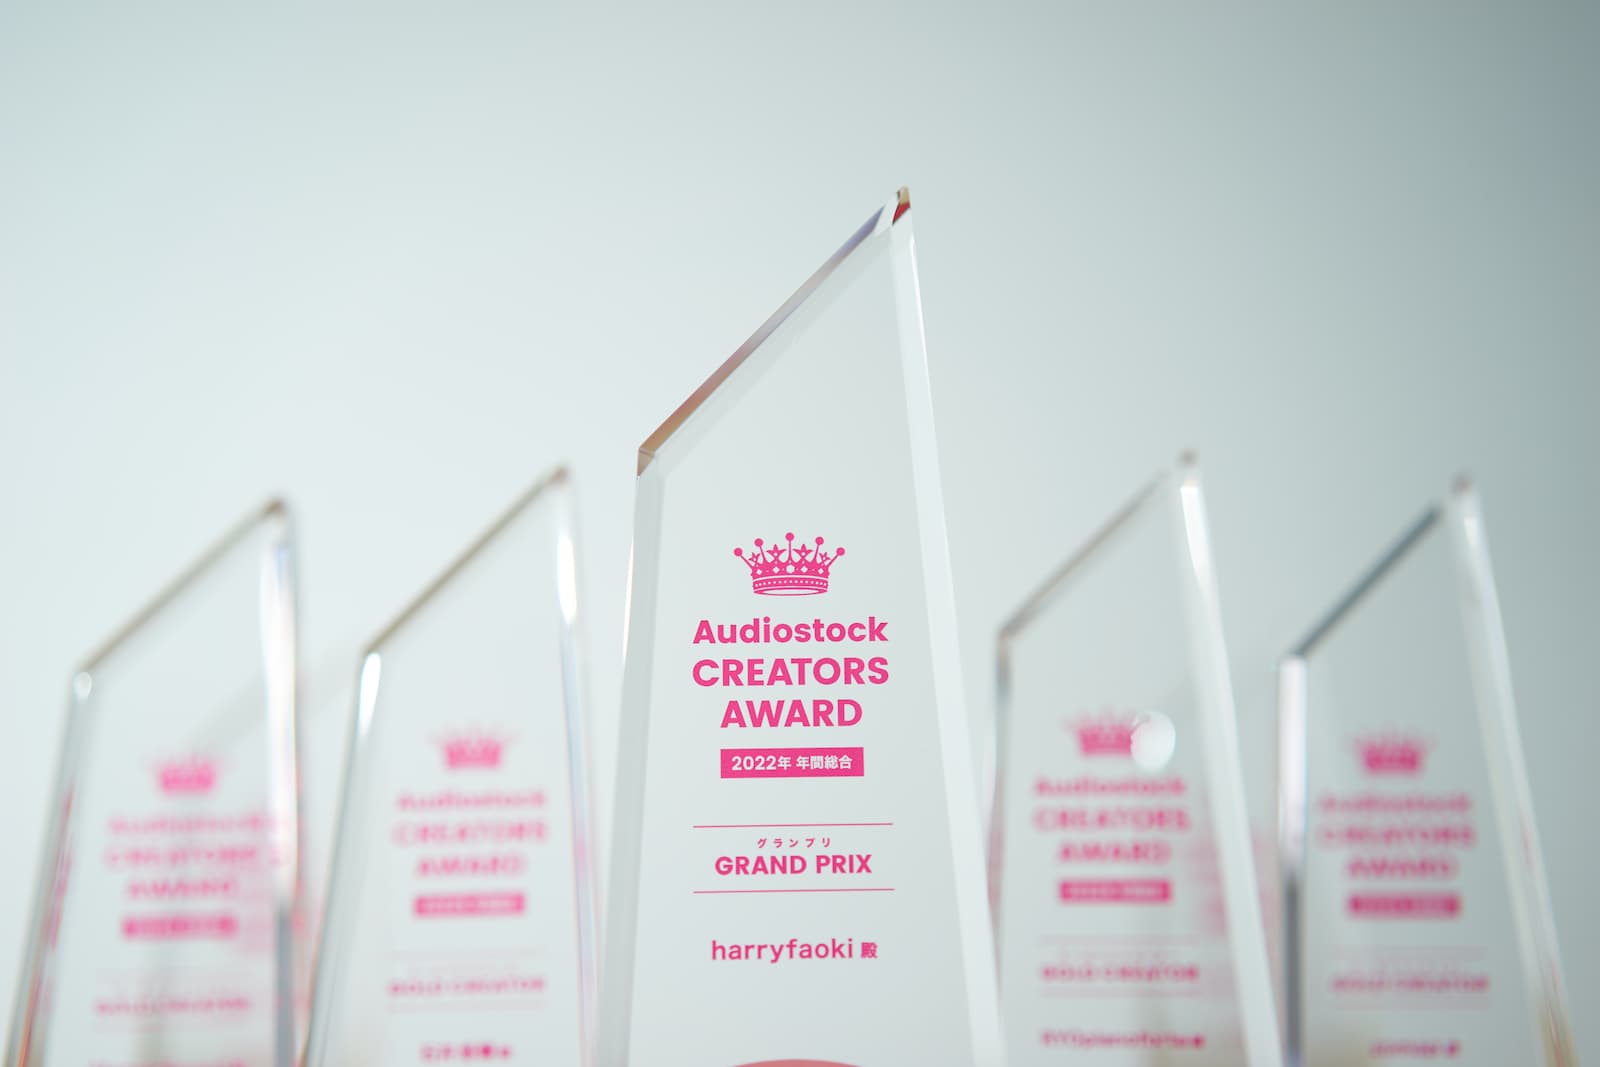 「Audiostock CREATORS AWARD」と刻印されたクリスタルトロフィーの写真。それぞれの賞とクリエイターの名前も併せて刻印されている。